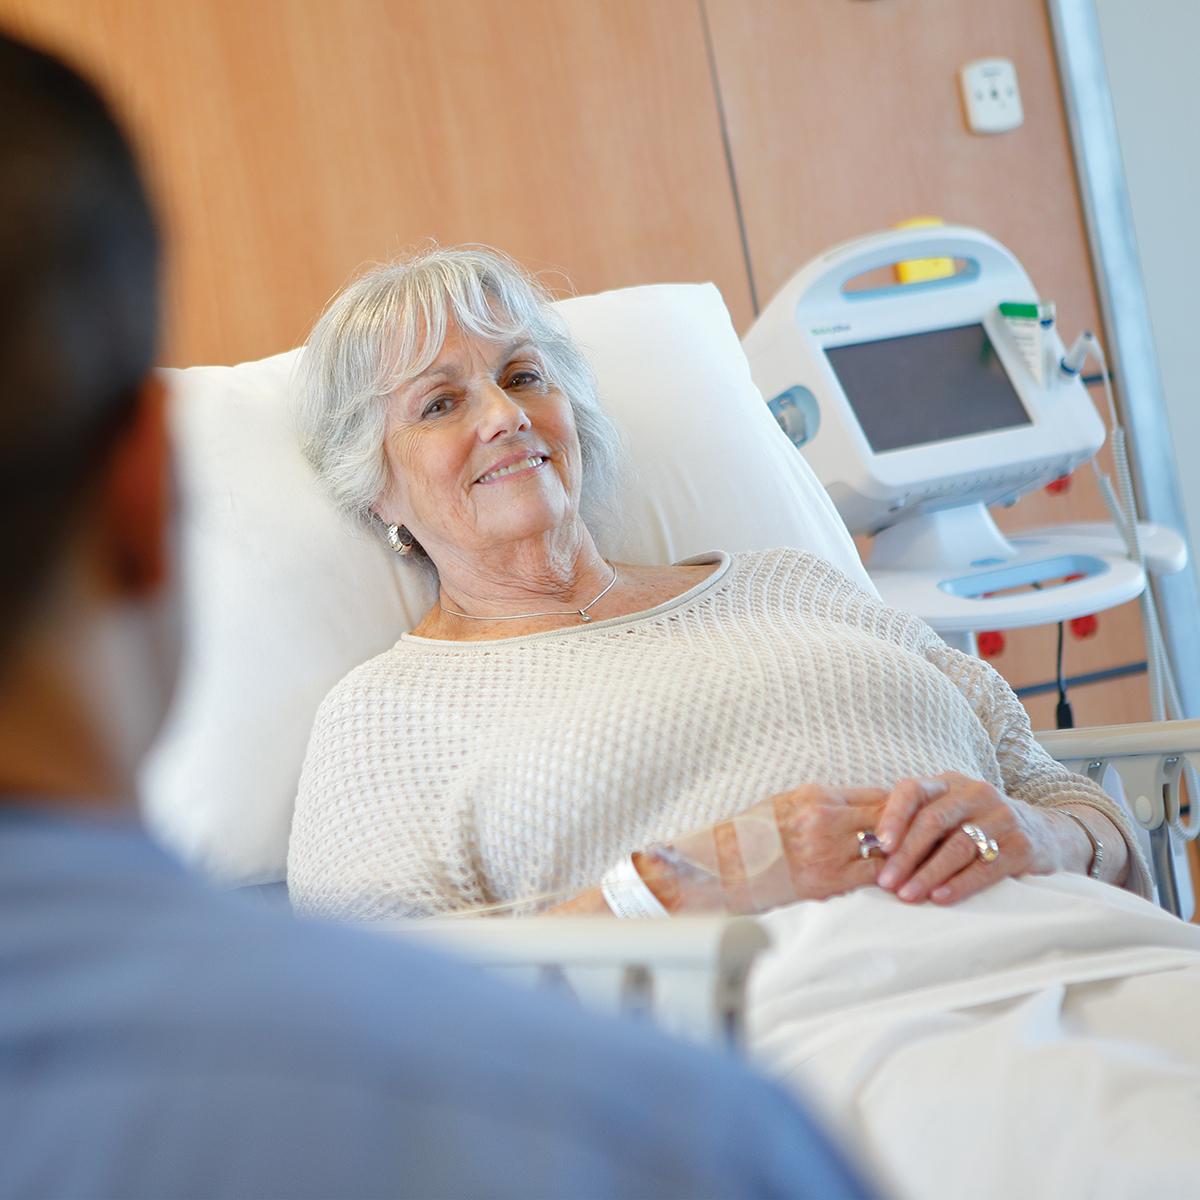 En läkare närmar sig en leende patient på en Hillrom-procedurakutvagn. En Connex®-monitor för vitala tecken syns i bakgrunden.